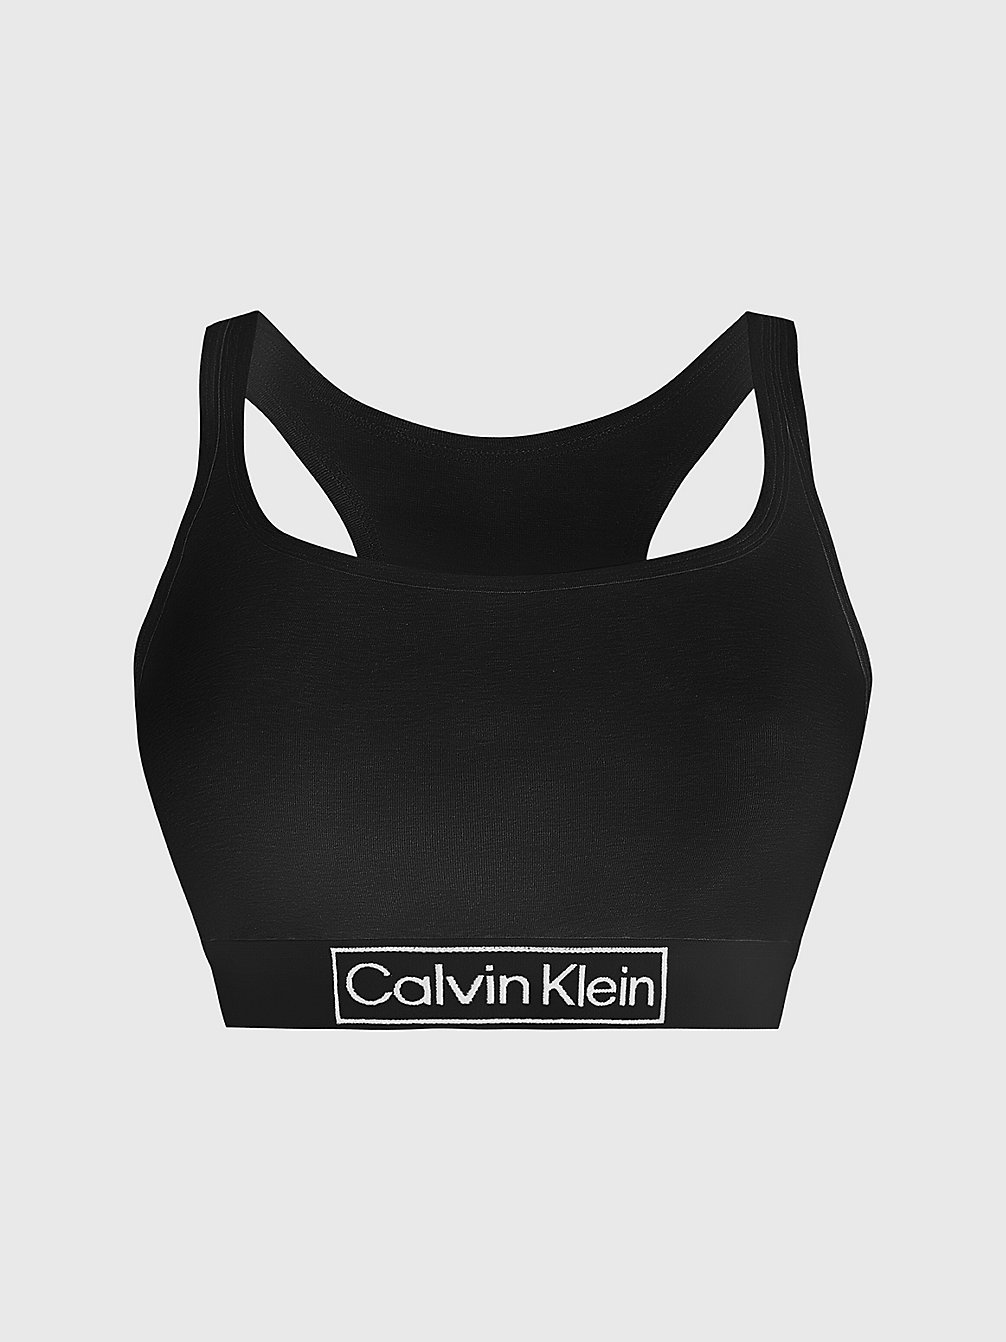 BLACK > Бралетт плюс-сайз - Reimagined Heritage > undefined Женщины - Calvin Klein